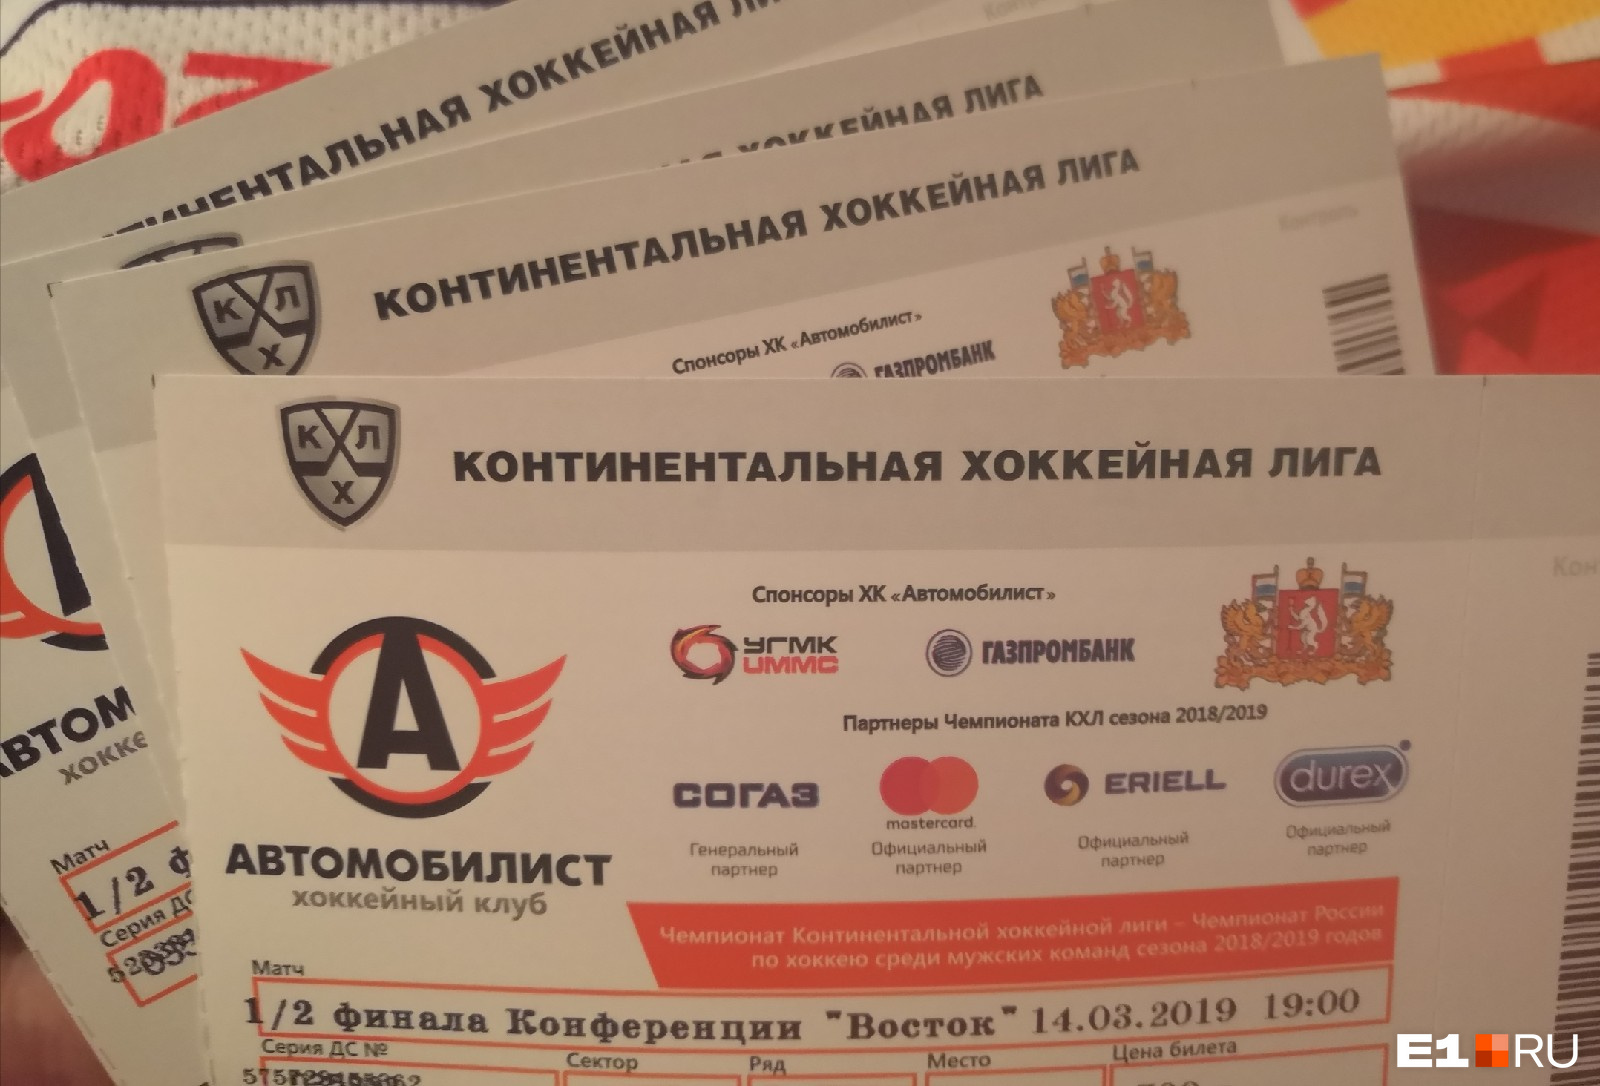 Купить билет на хоккей автомобилист в екатеринбурге. Билет на матч Автомобилист в Екатеринбурге. Билет на хоккей Автомобилист. Билеты хк Автомобилист. Сколько стоят билеты на матч Автомобилист.